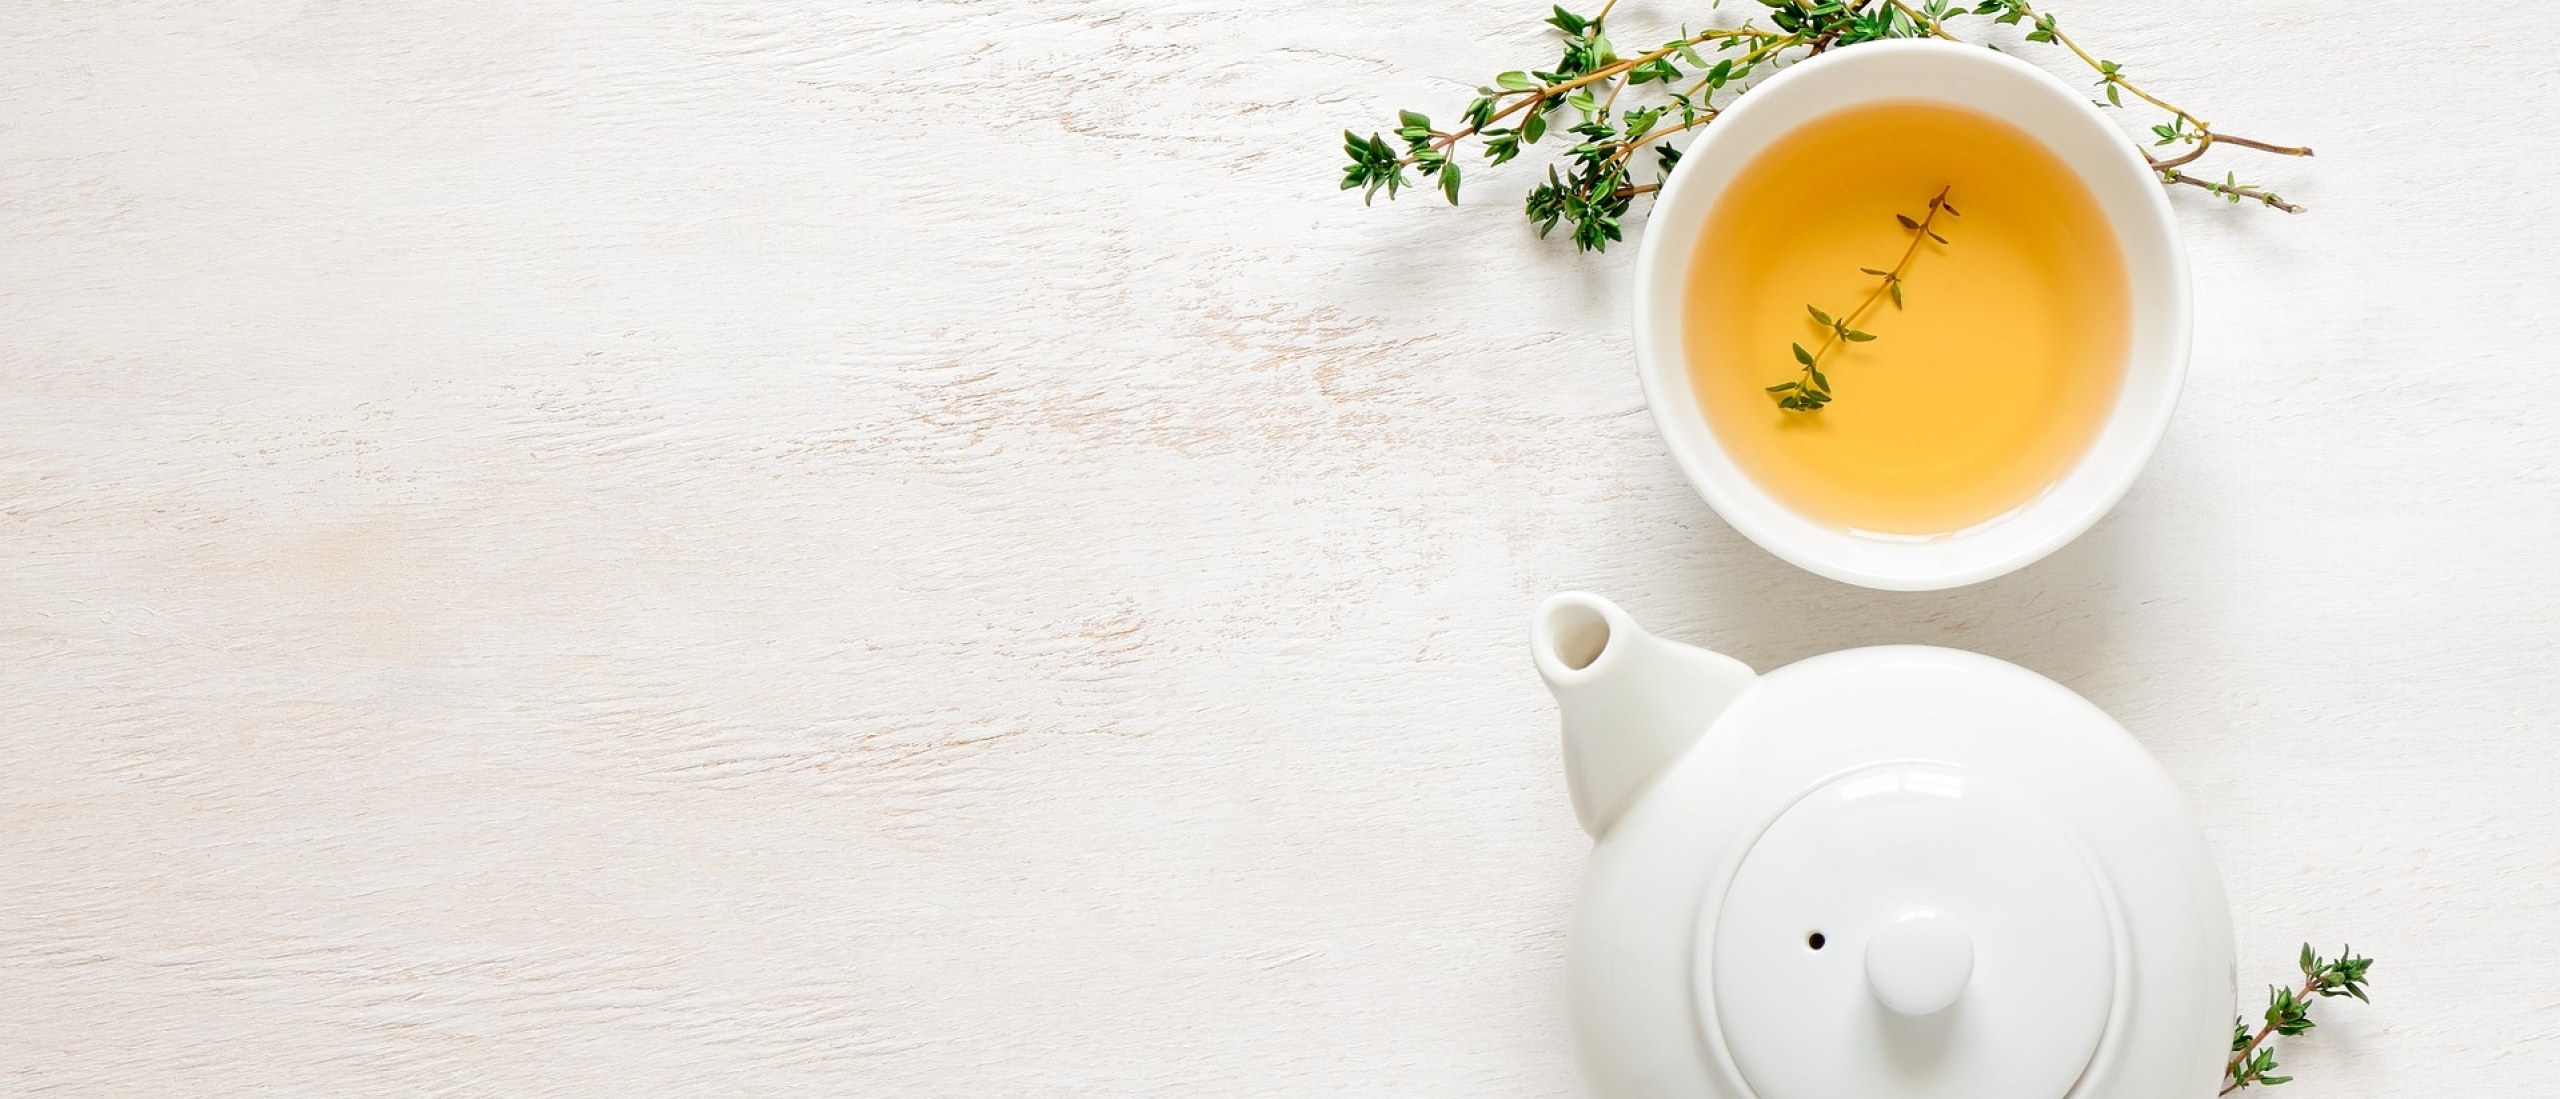 Ode aan thee: mijn top 5 lekkerste thee smaken en soorten